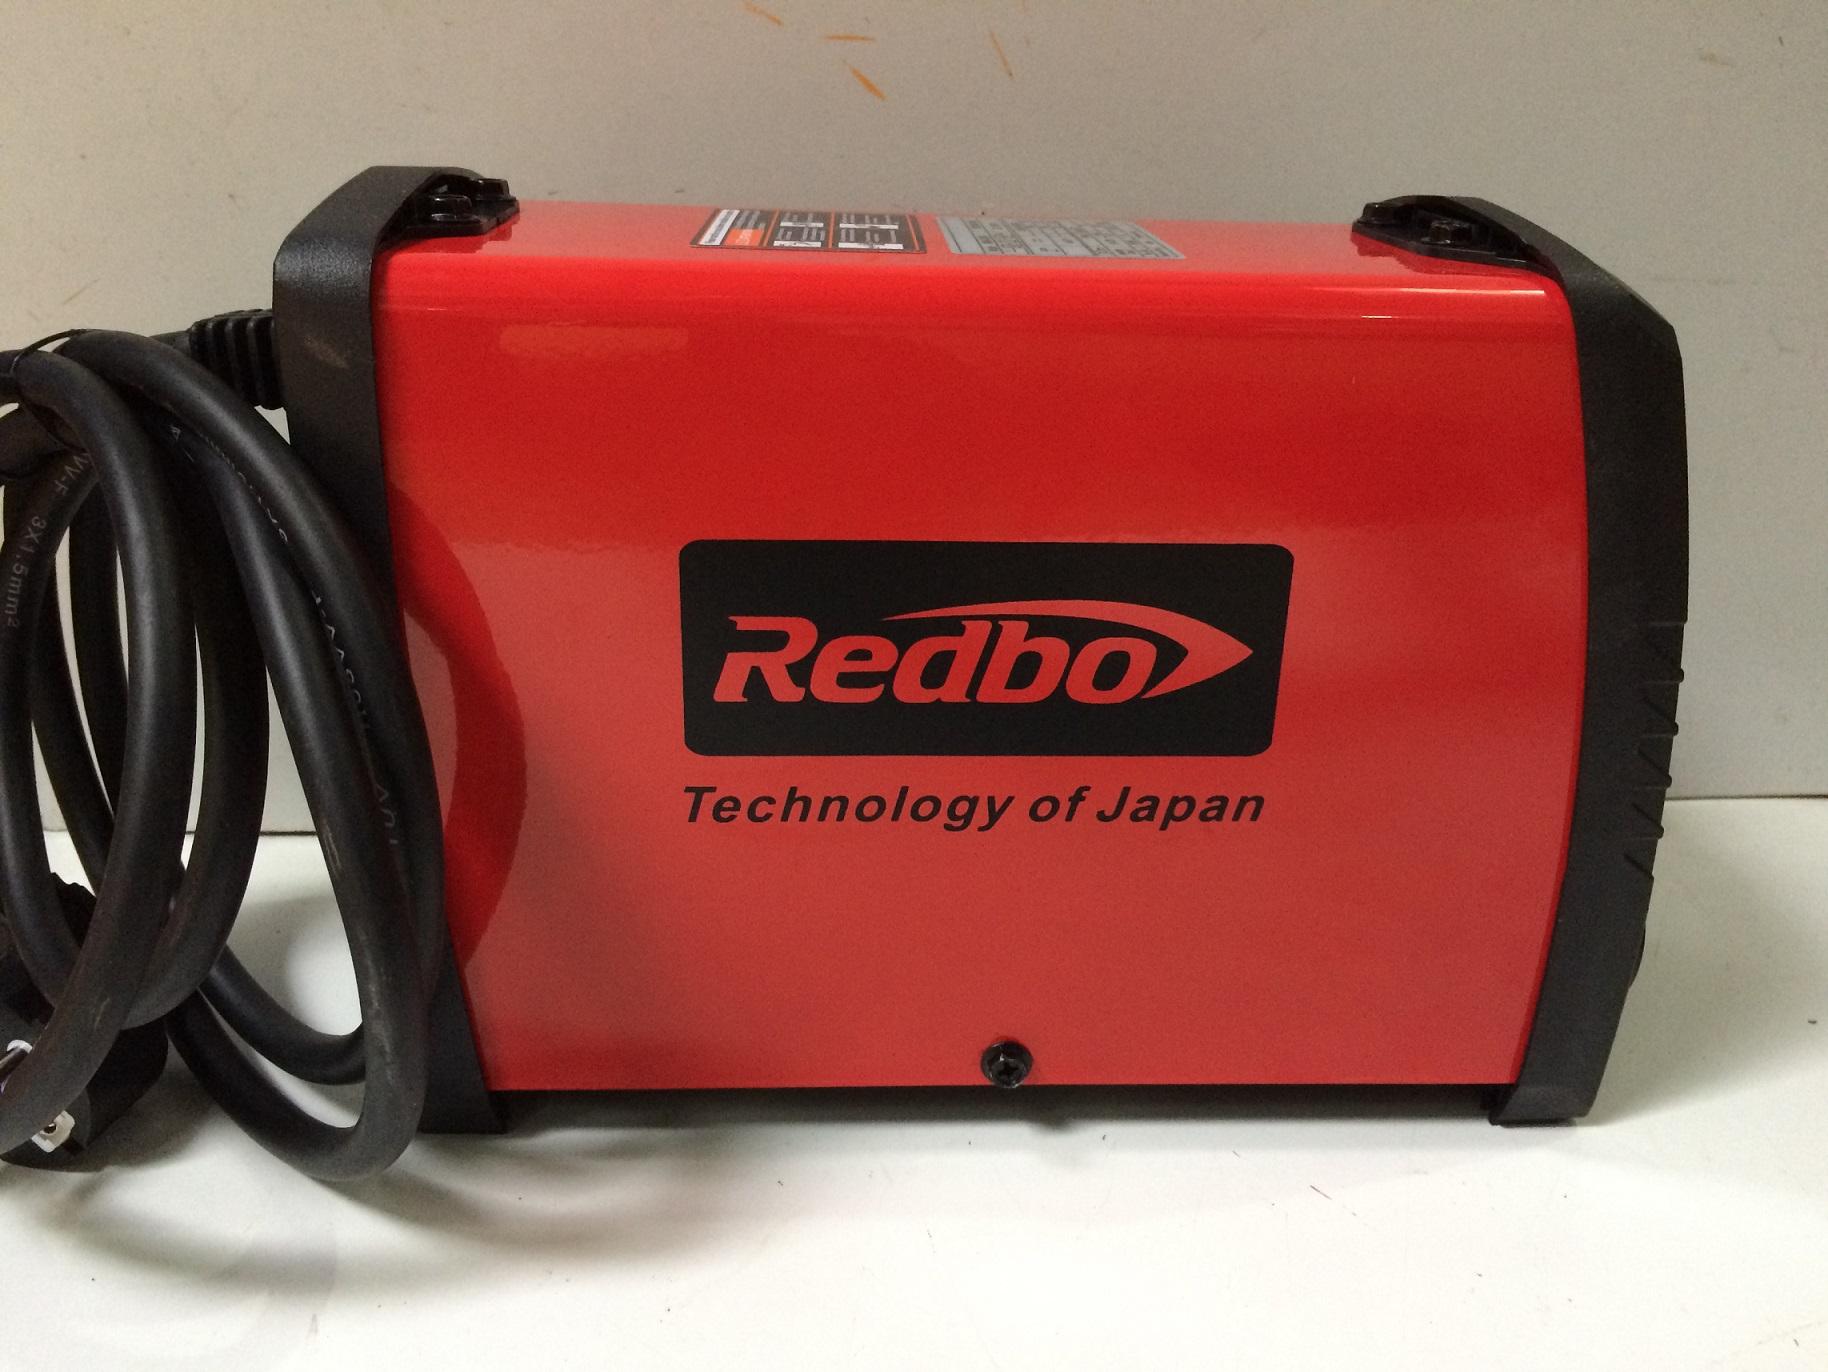 Máy hàn điện tử Redbo MINI-2000 (Đỏ)